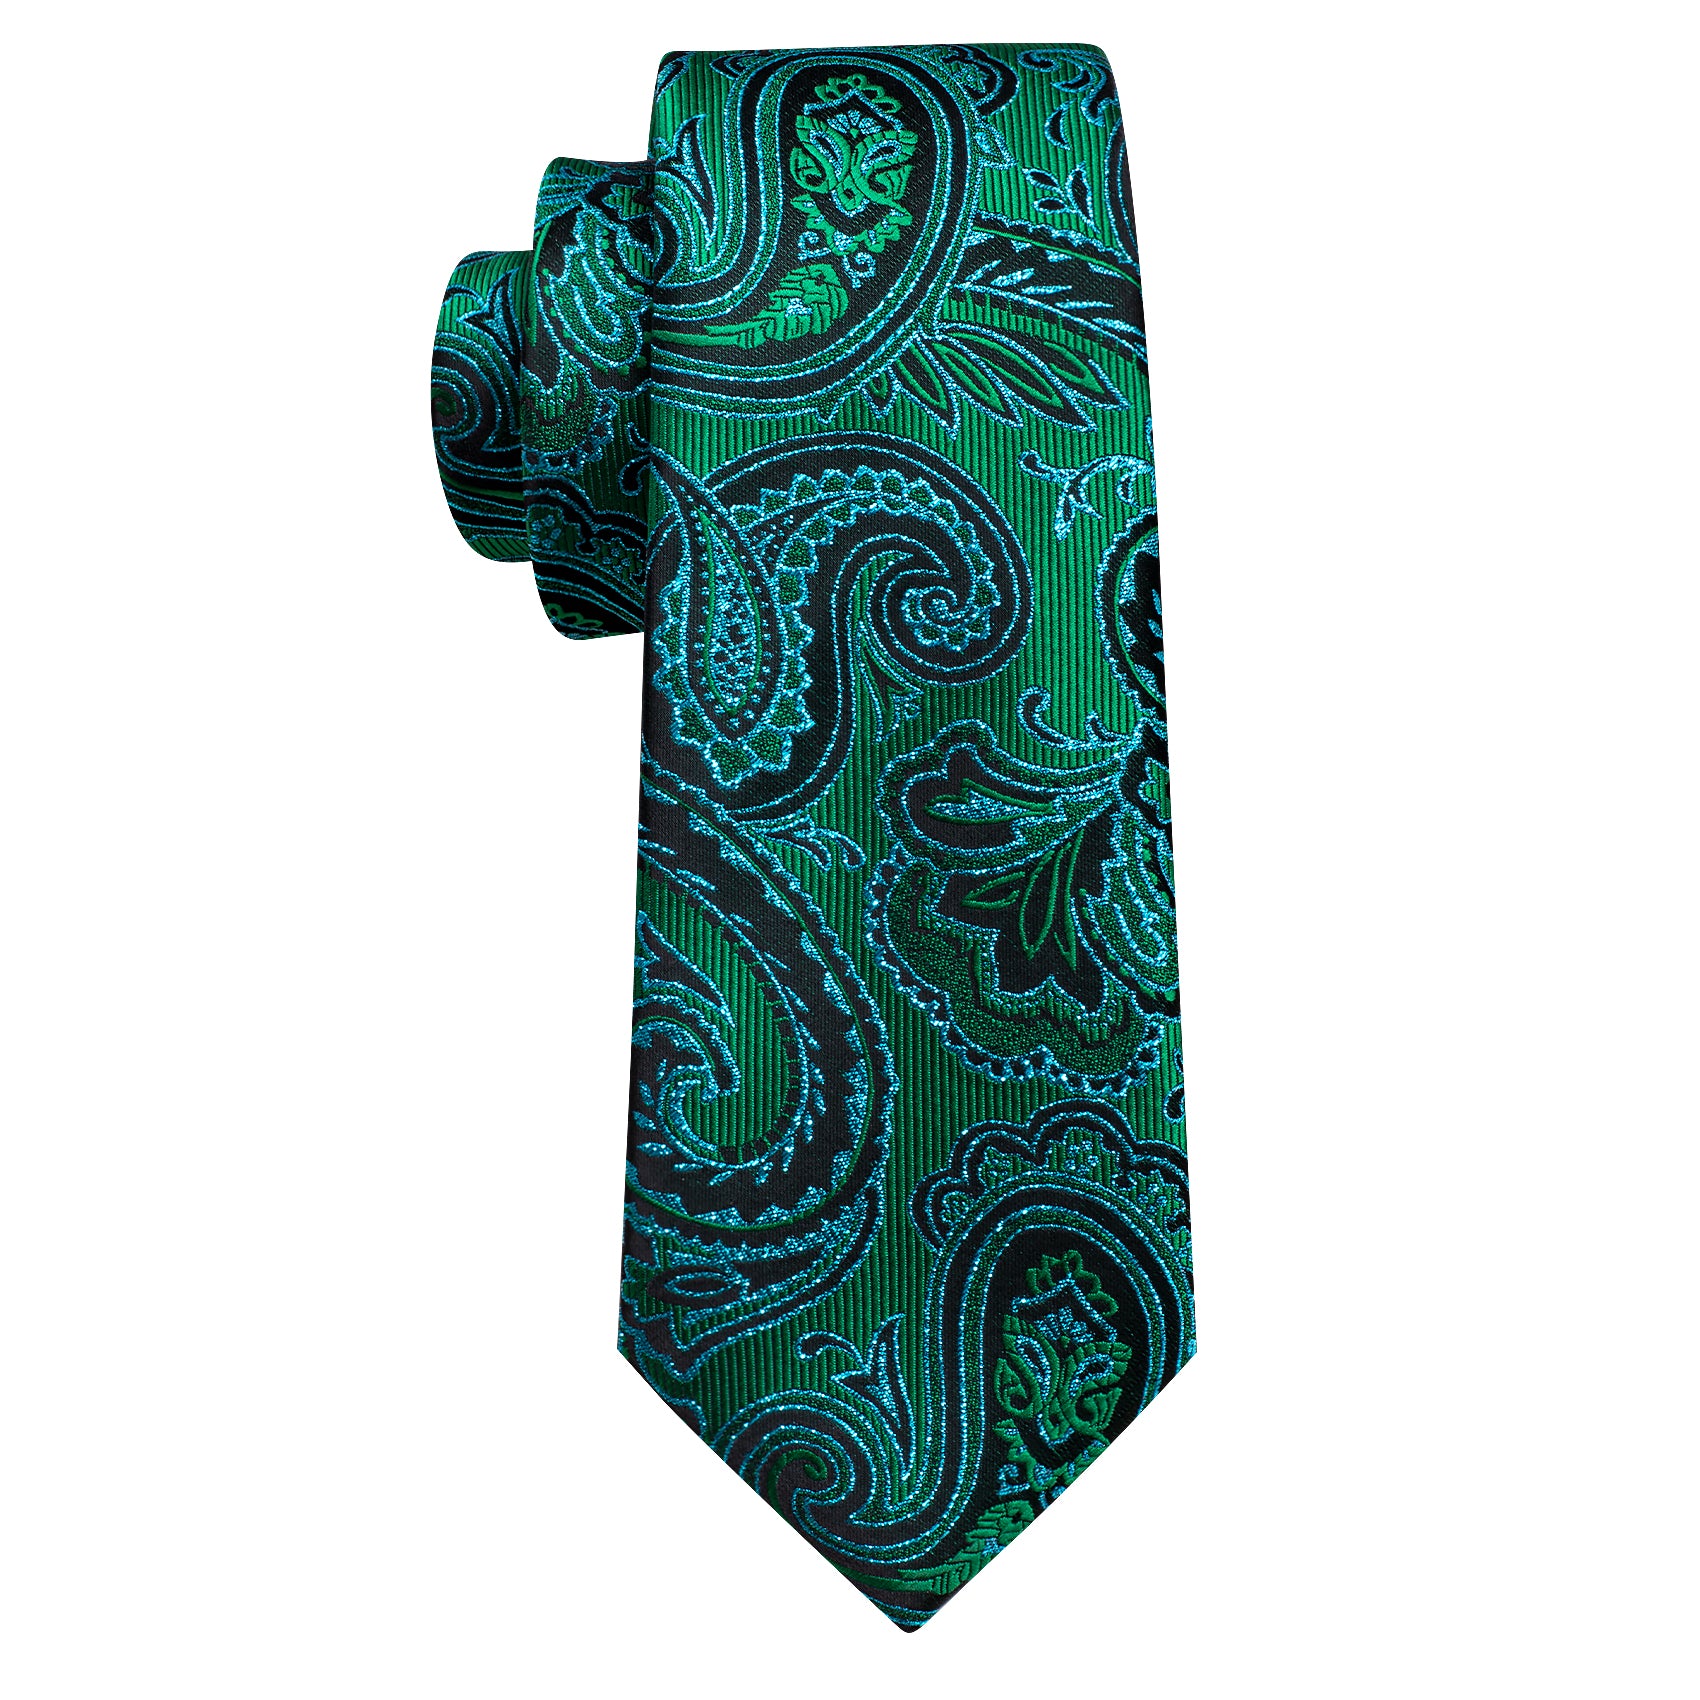 Barry Wang  Blue Green Paisley Silk Tie Hanky Cufflinks Set